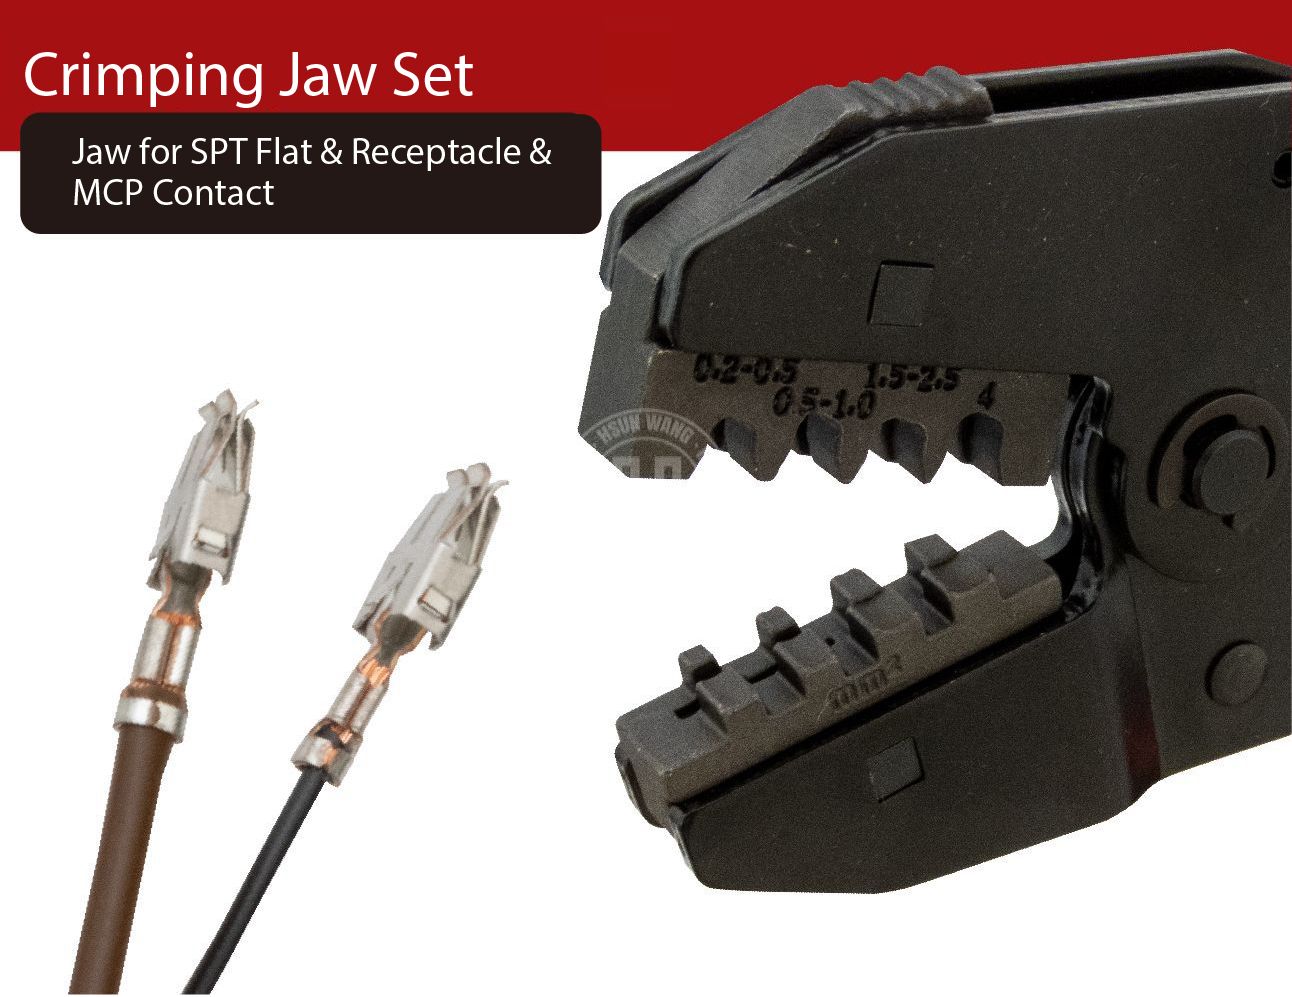 J12JL10-Jaw-crimp-crimping-crimp tool-crimping tool-crimp wire-ferrule crimp-ratchet crimp-Taiwan Manufacturer-hsunwang-licrim-hsunwang.com